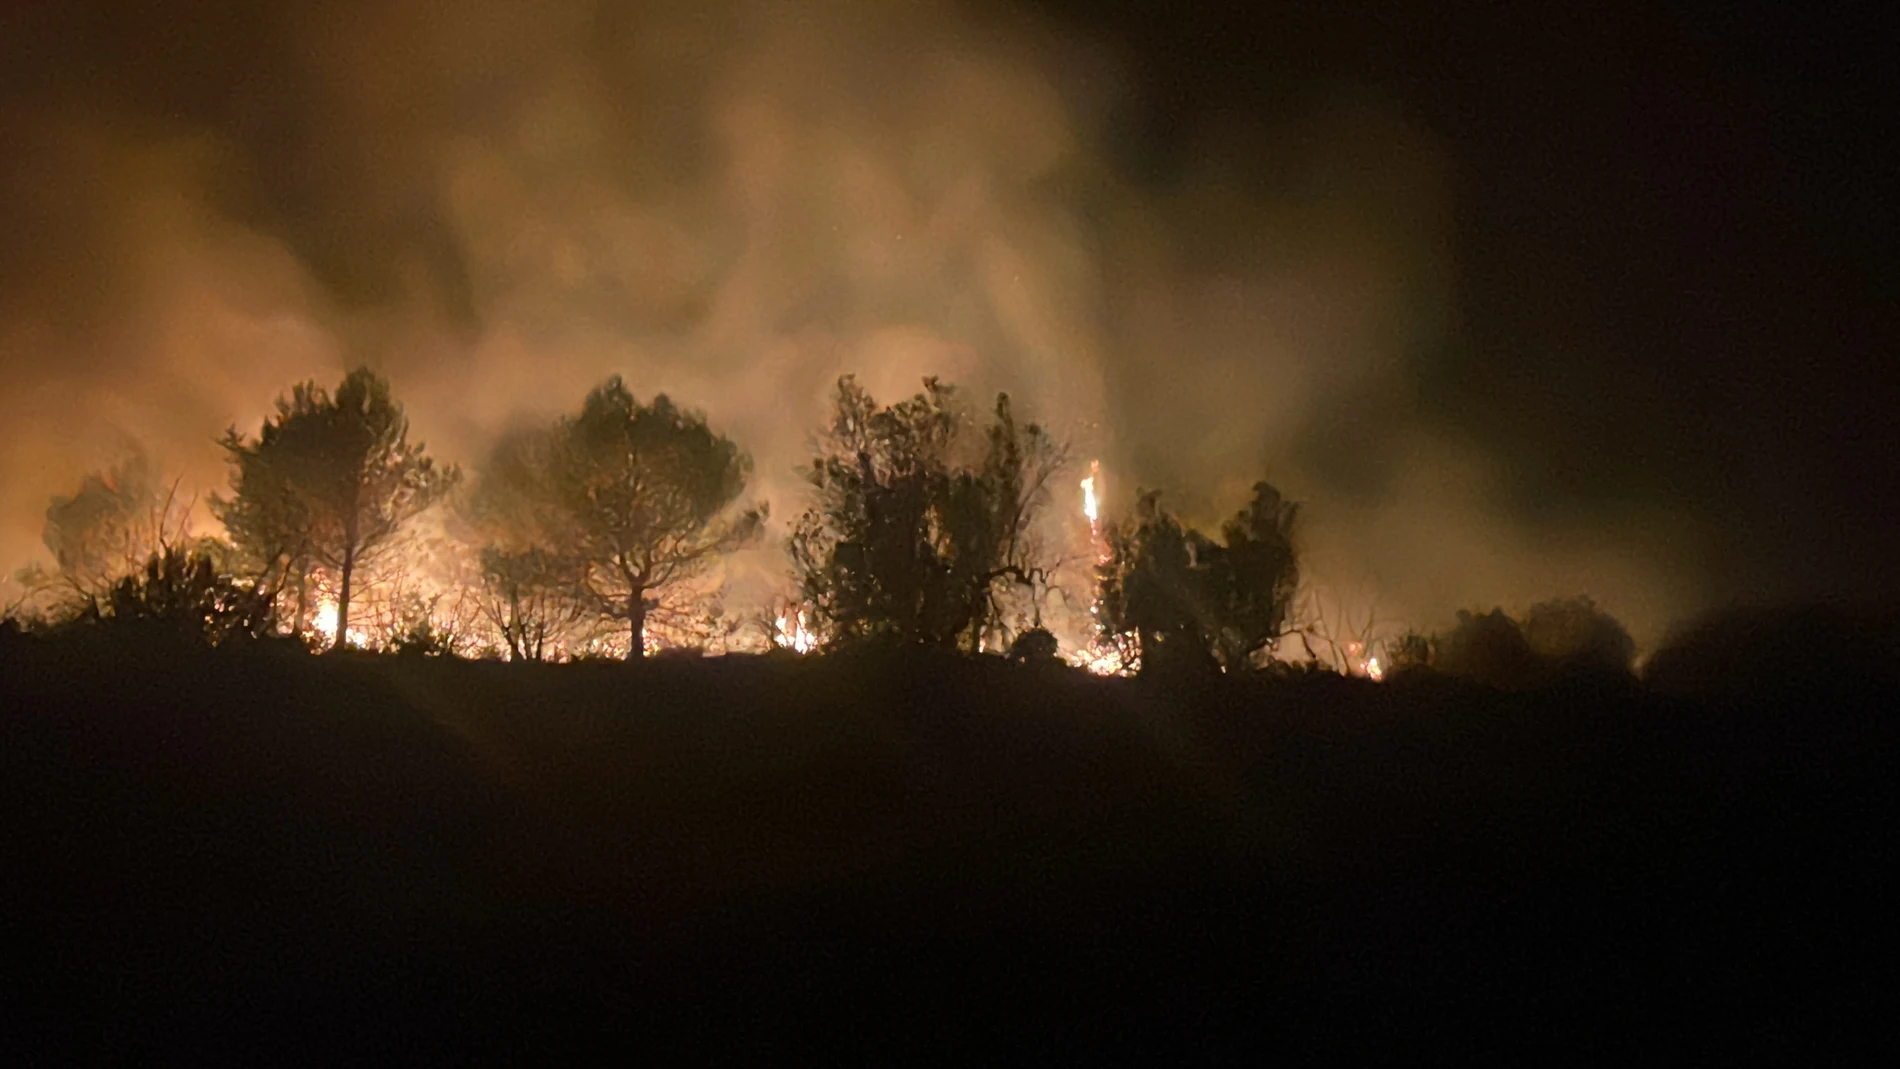 El incendio forestal que se declaró la noche del pasado sábado en Vall d,'Ebo (Alicante), y que ha quemado cerca de 9.500 hectáreas y forzado al desalojo de más de un millar de personas, continúa "muy activo